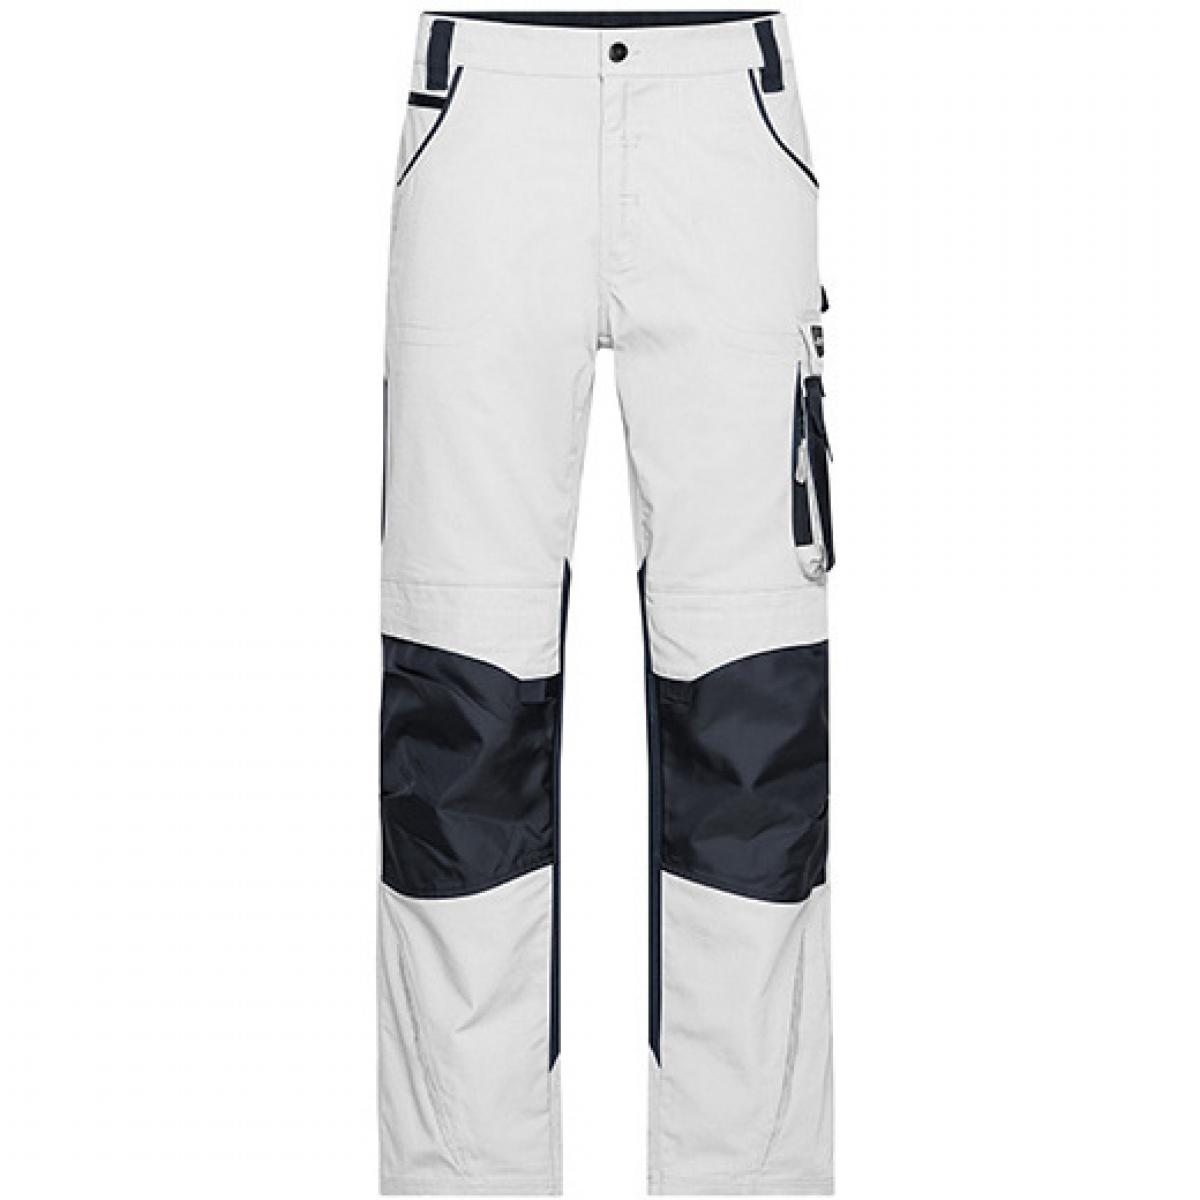 Hersteller: James+Nicholson Herstellernummer: JN832 Artikelbezeichnung: Workwear Pants -STRONG- / Arbeitshose lang Farbe: White/Carbon